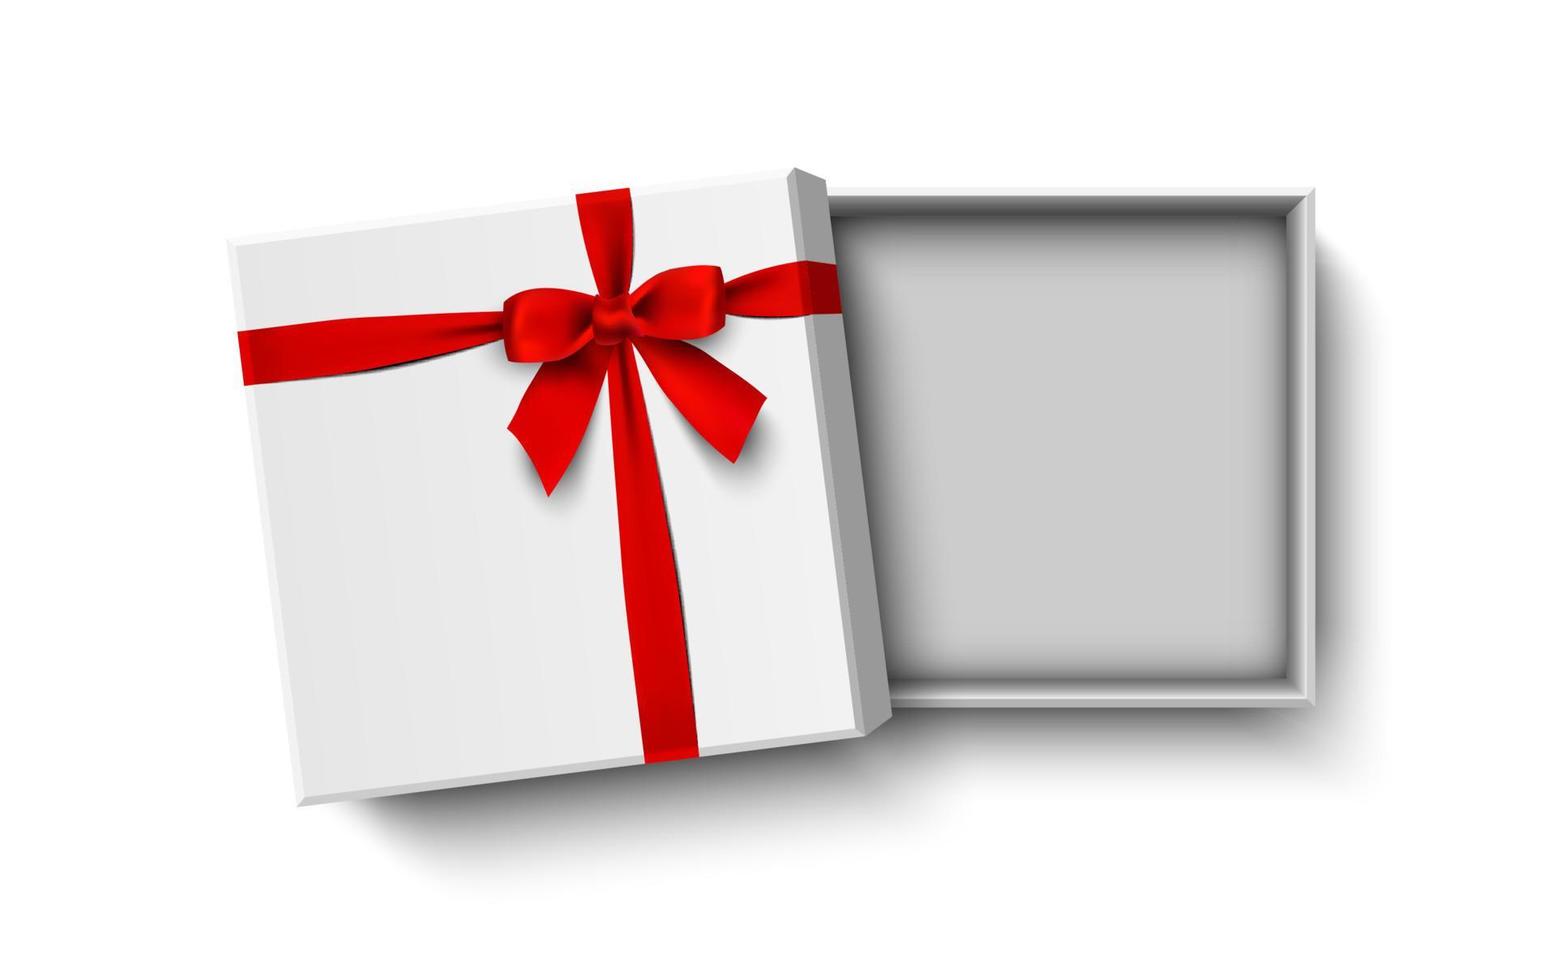 scatola regalo bianca aperta con fiocco rosso isolato su sfondo bianco, illustrazione vettoriale